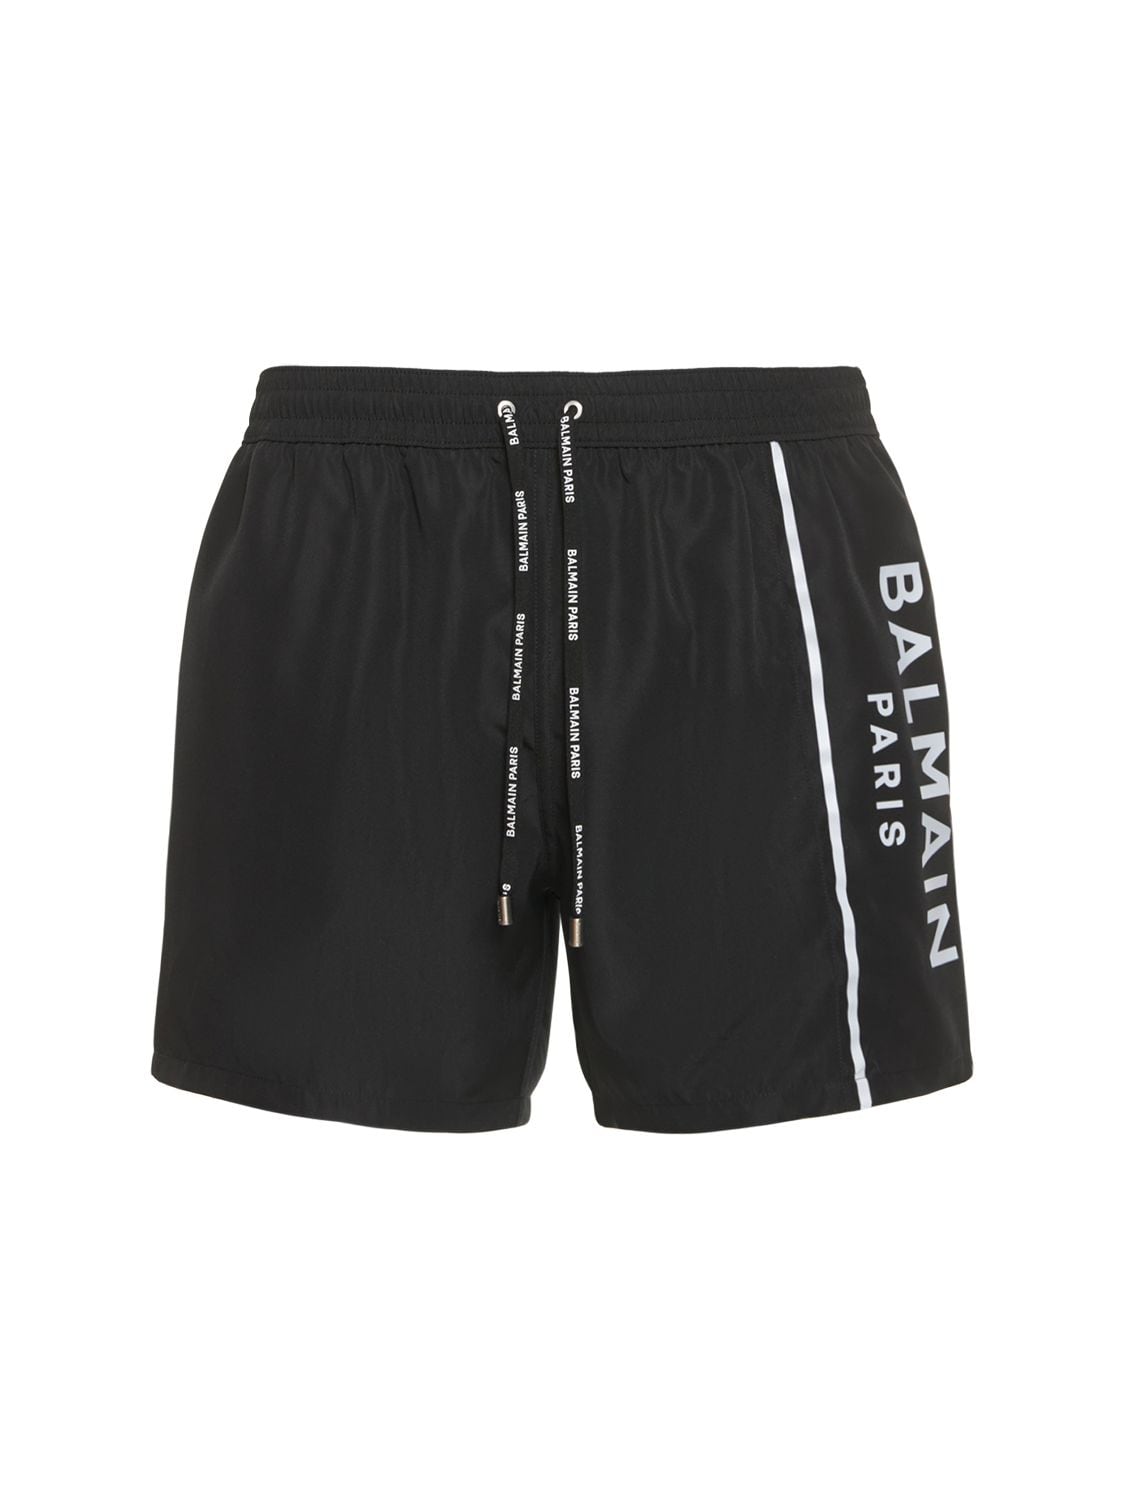 Balmain Underwear Pierre Balmain Logo Swim Shorts In Black